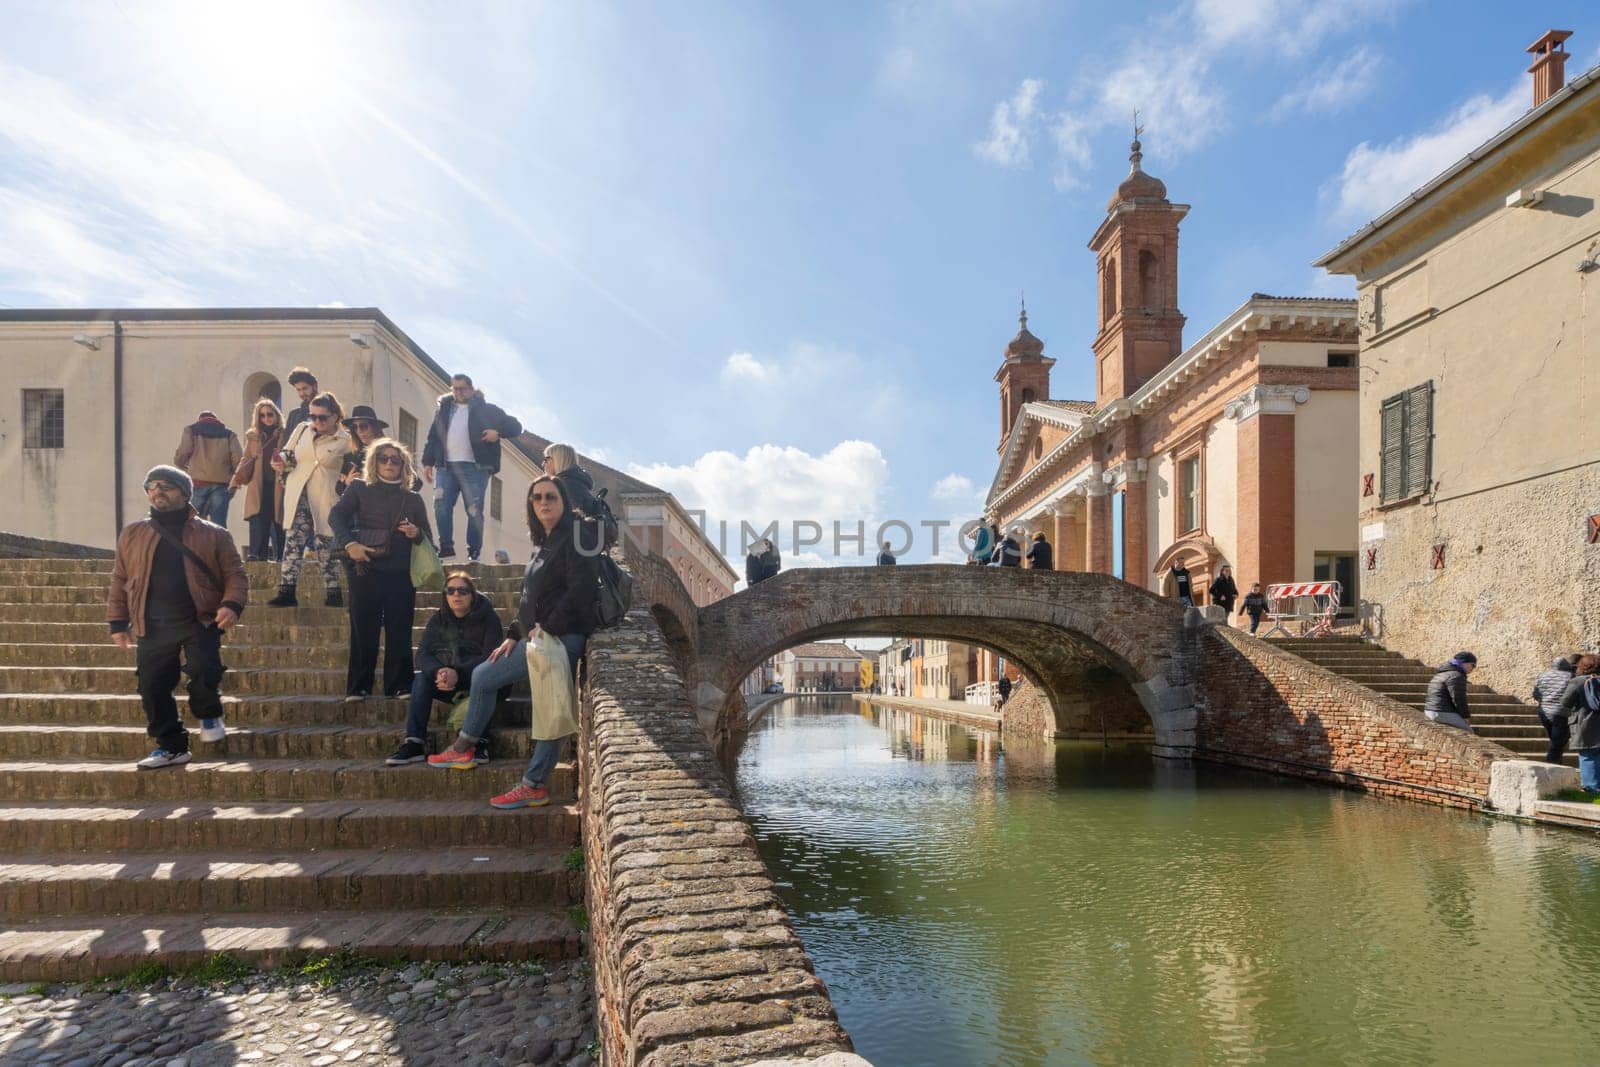 Bridge of Sbirri in Comacchio, Italy by sergiodv